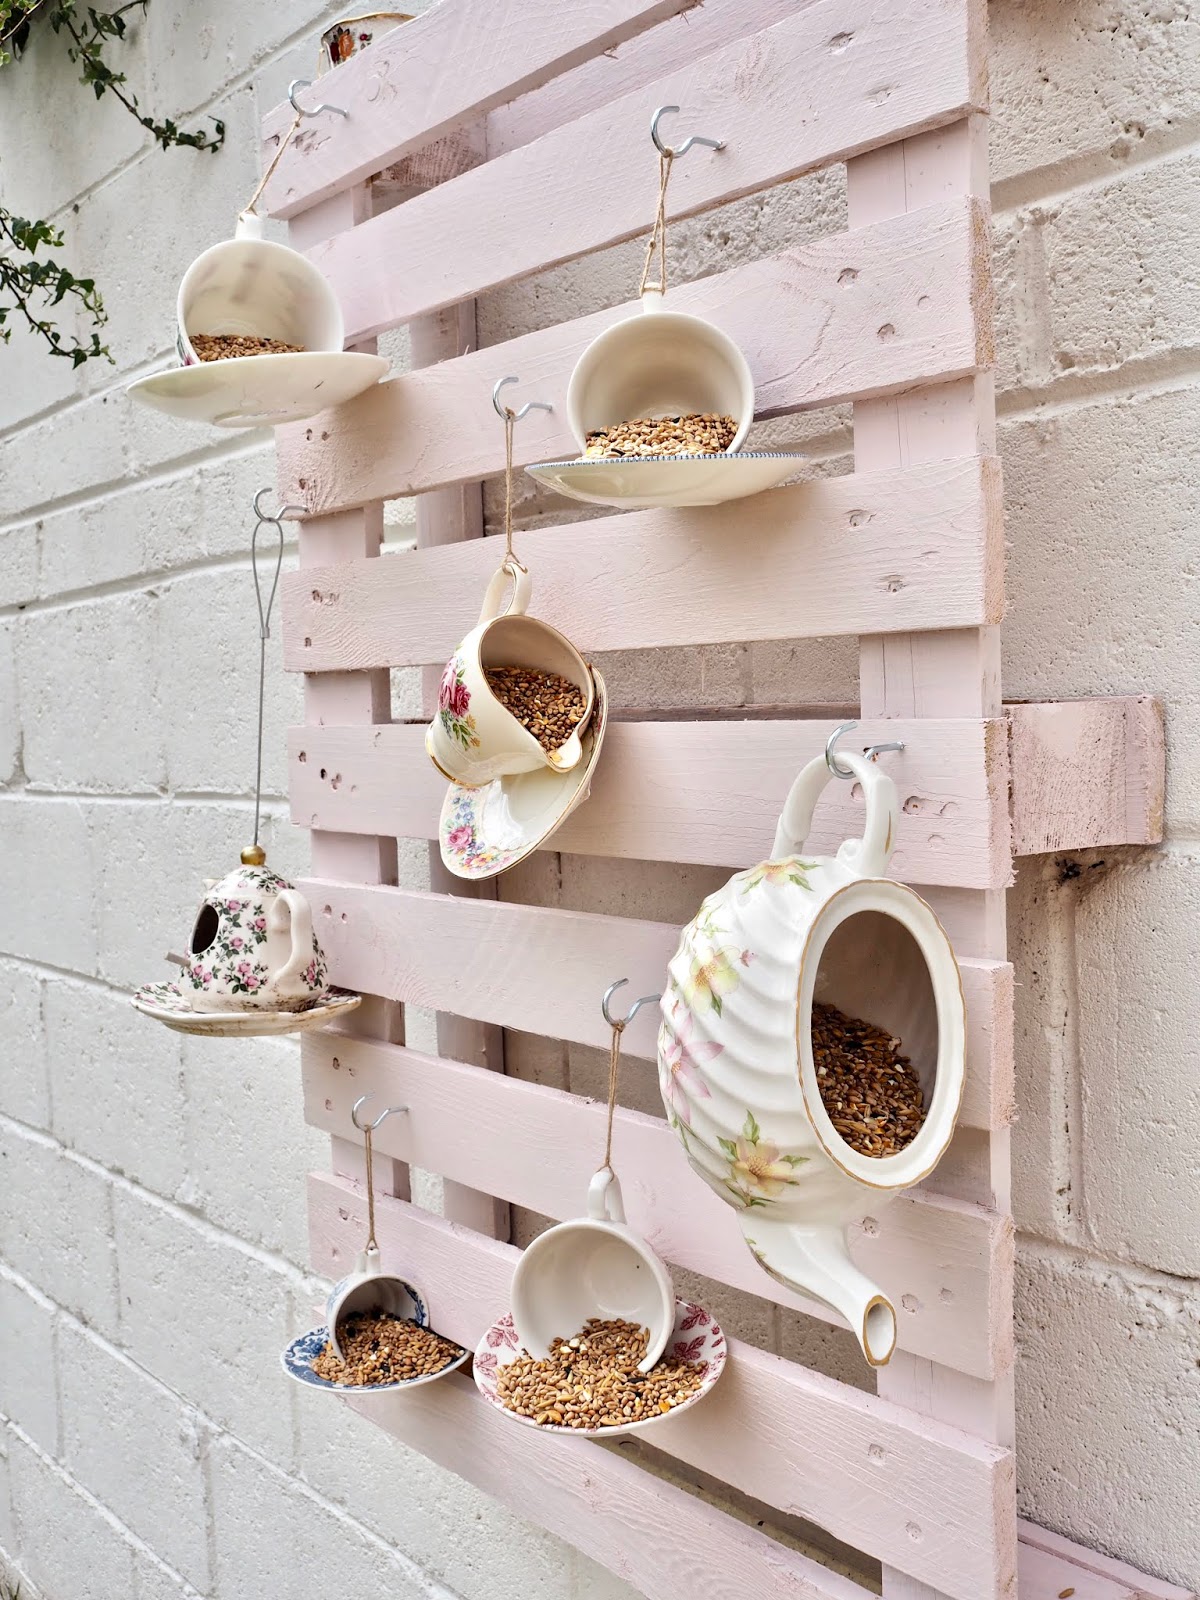 DIY Teapot Bird Feeder Made From Pallet Wood